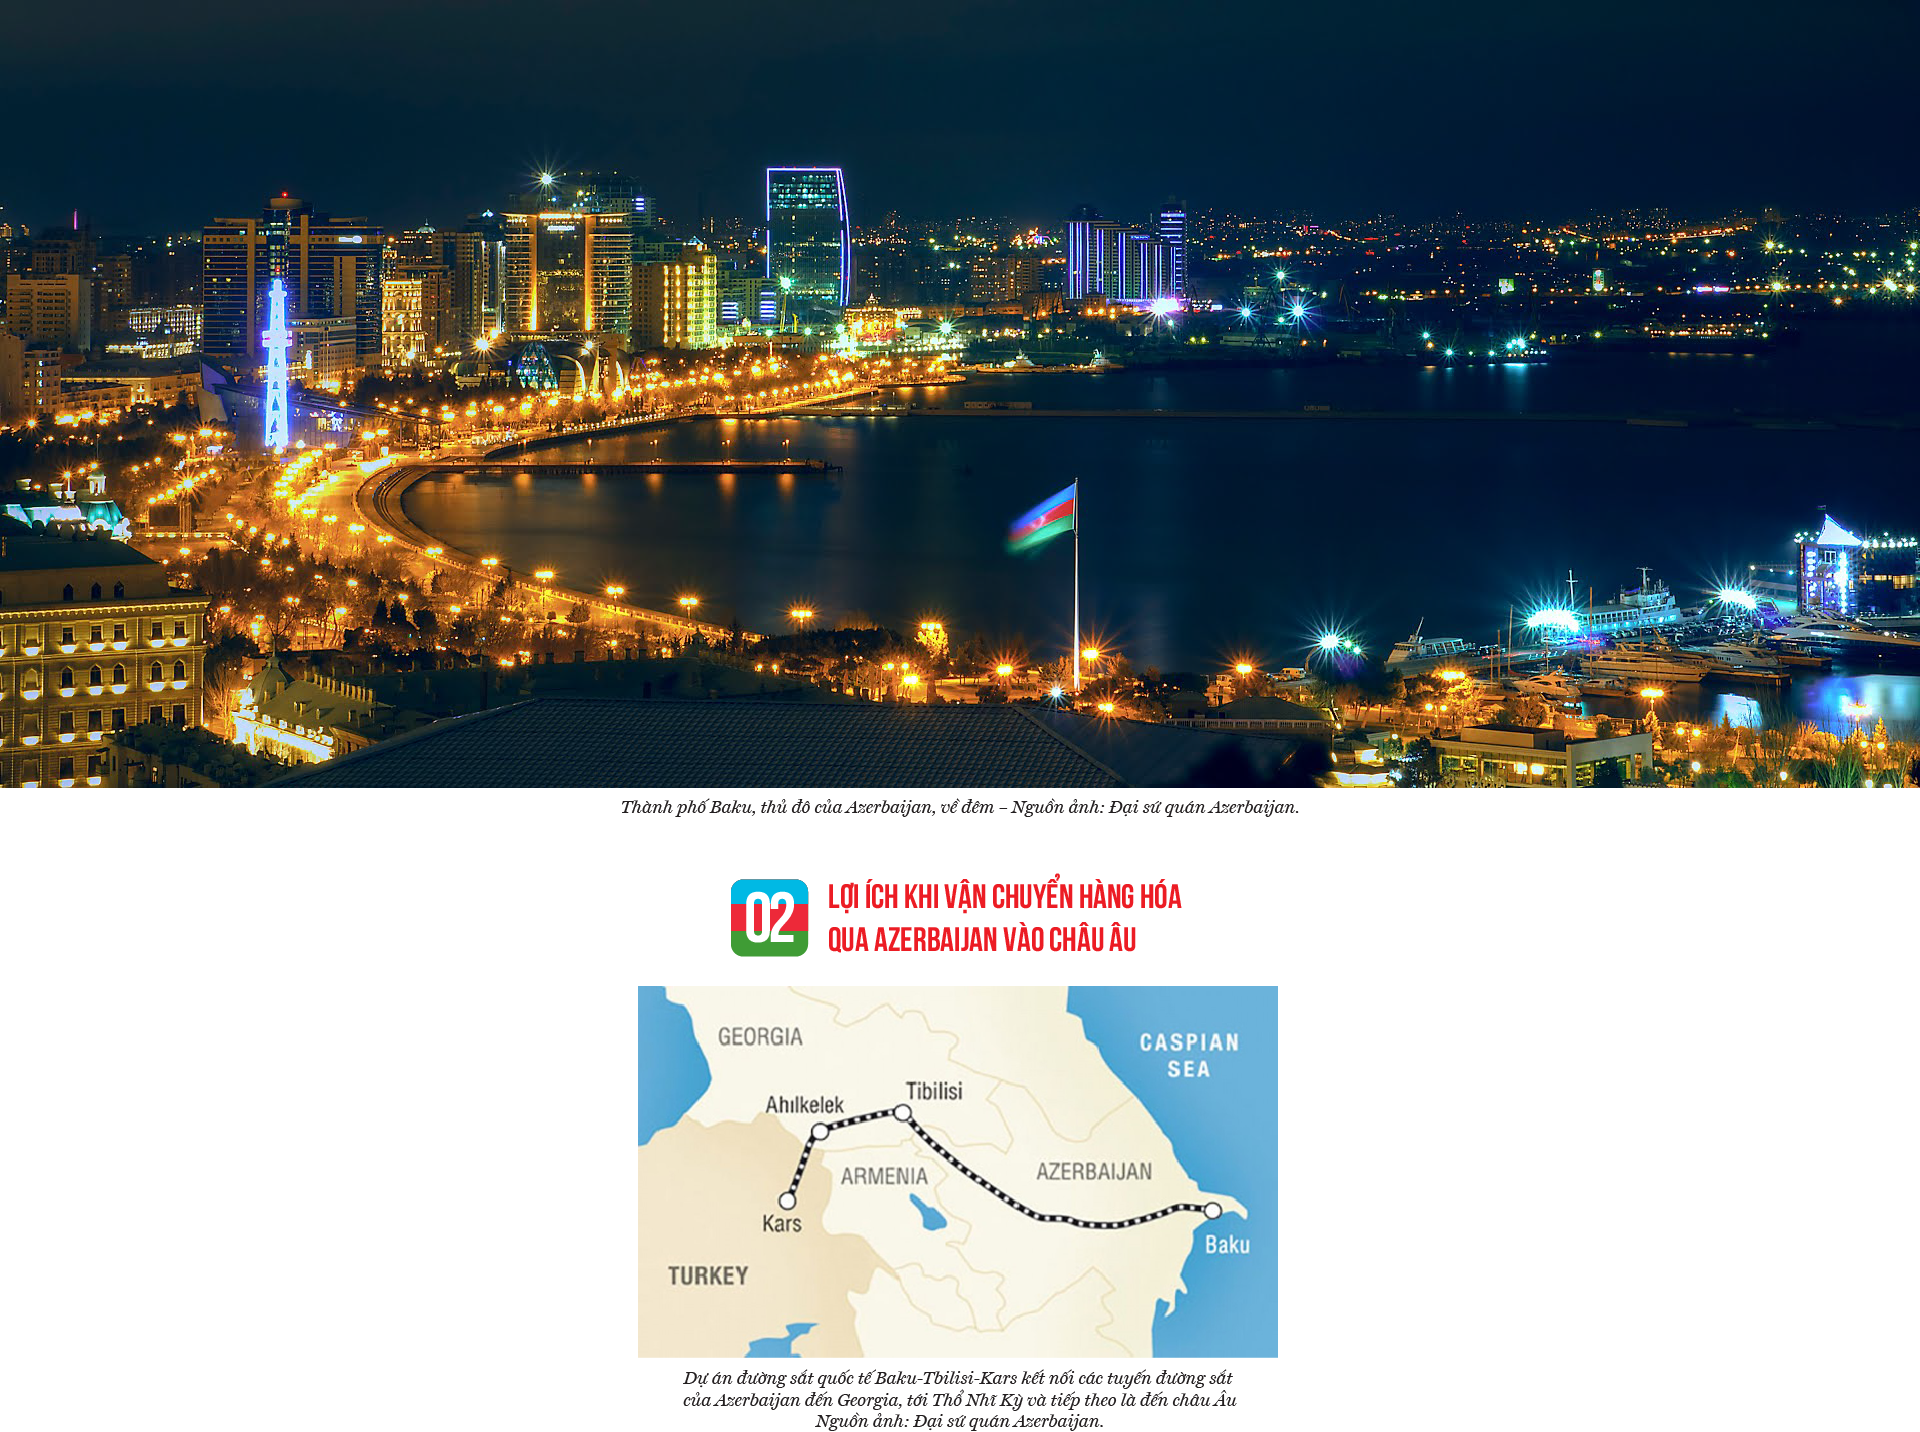 Azerbaijan - cửa ngõ mới cho hàng Việt vào châu Âu - Ảnh 4